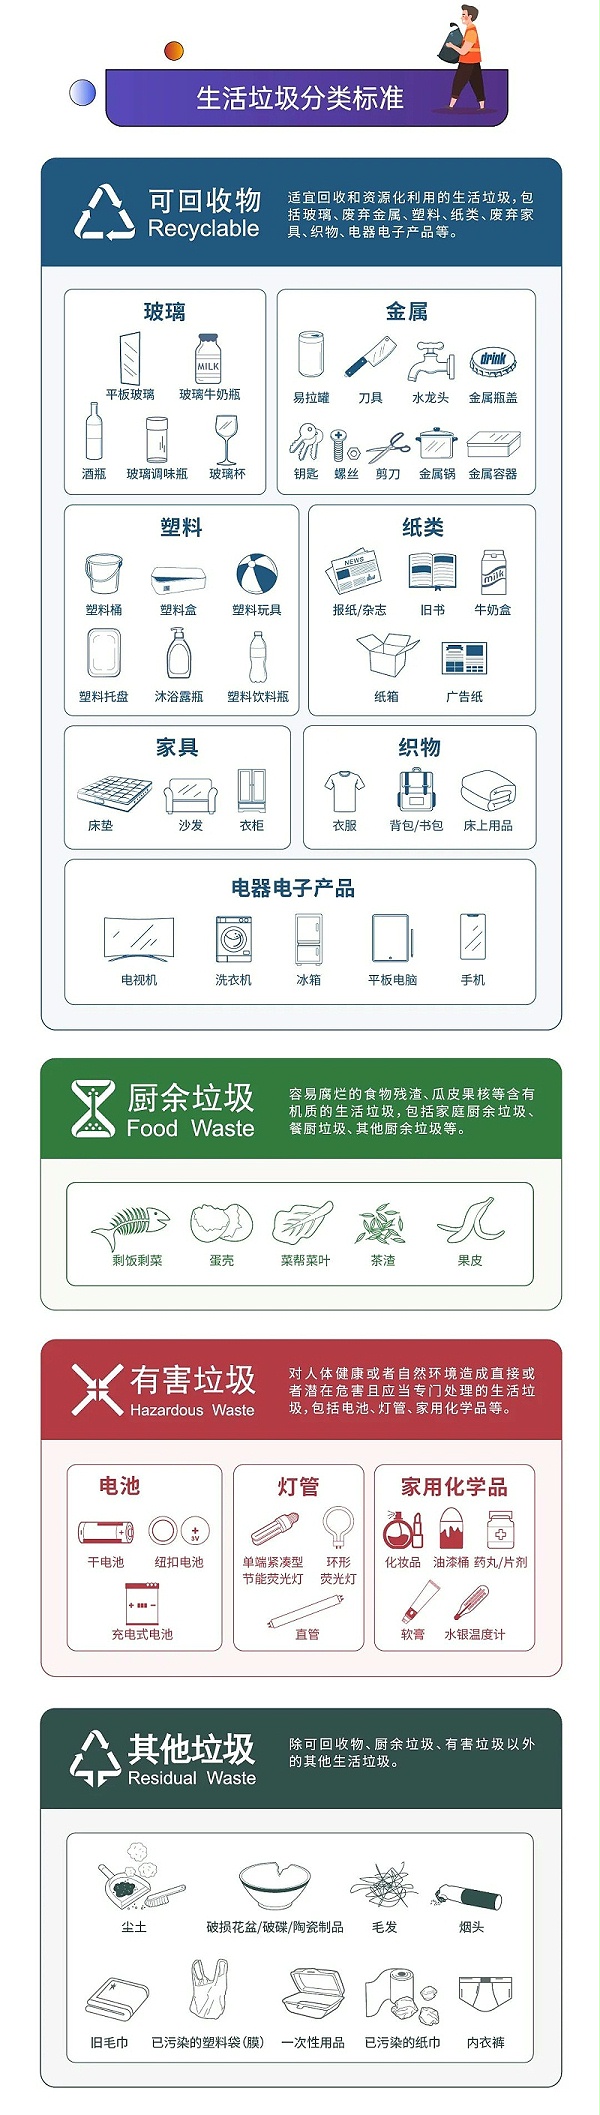 2深圳市生活垃圾分类管理条例正式实施-玉龙环保